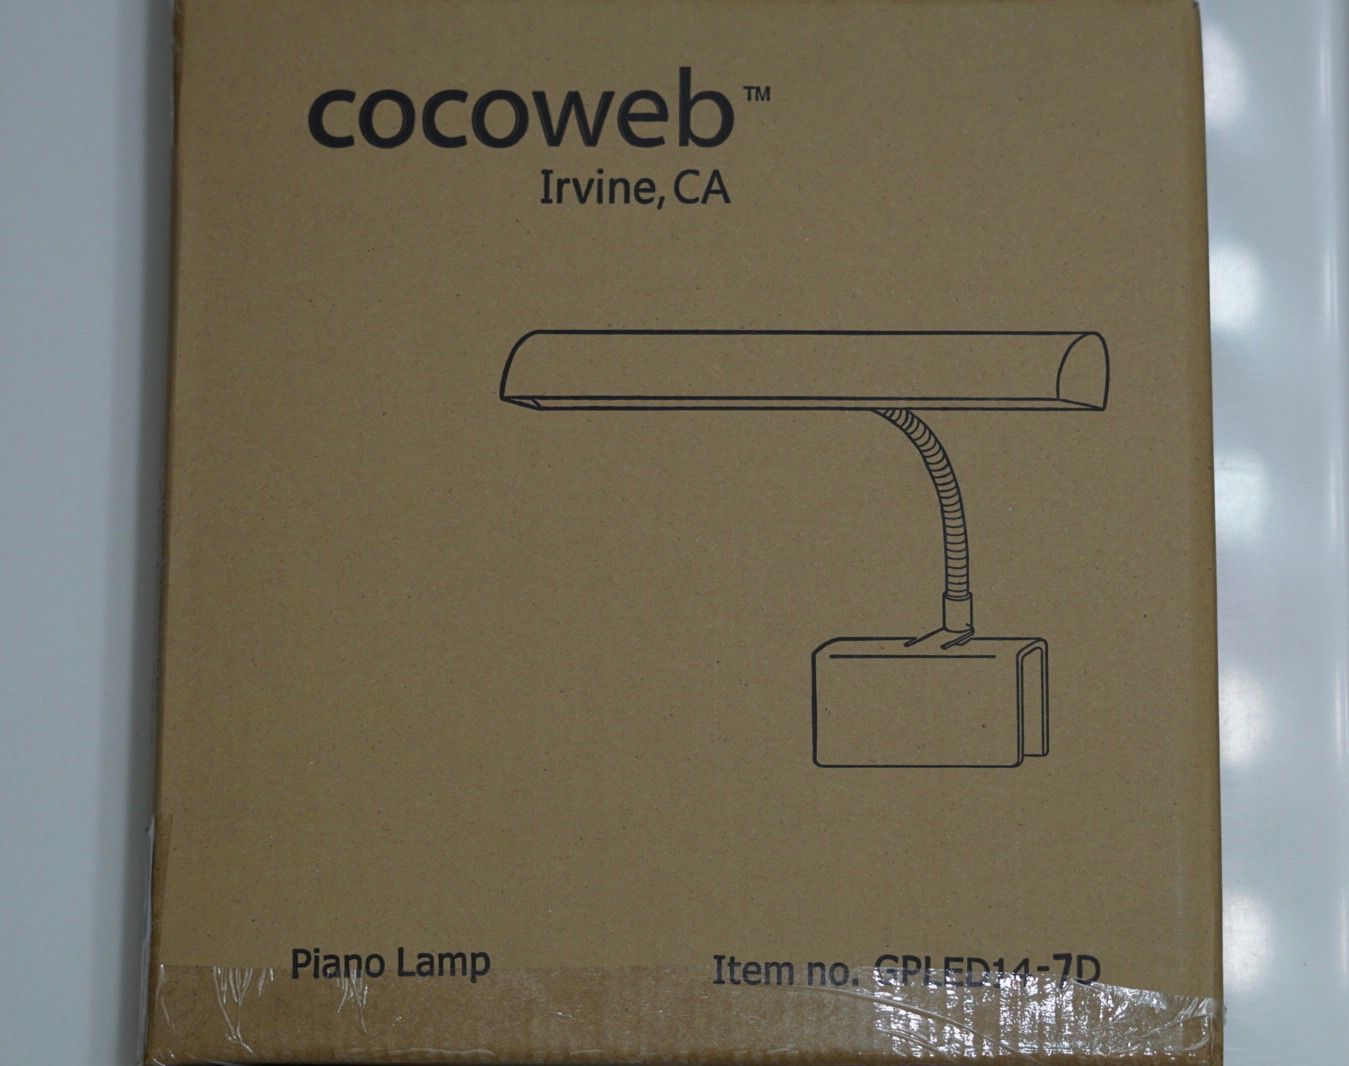 Cocoweb 14” Piano Lamp